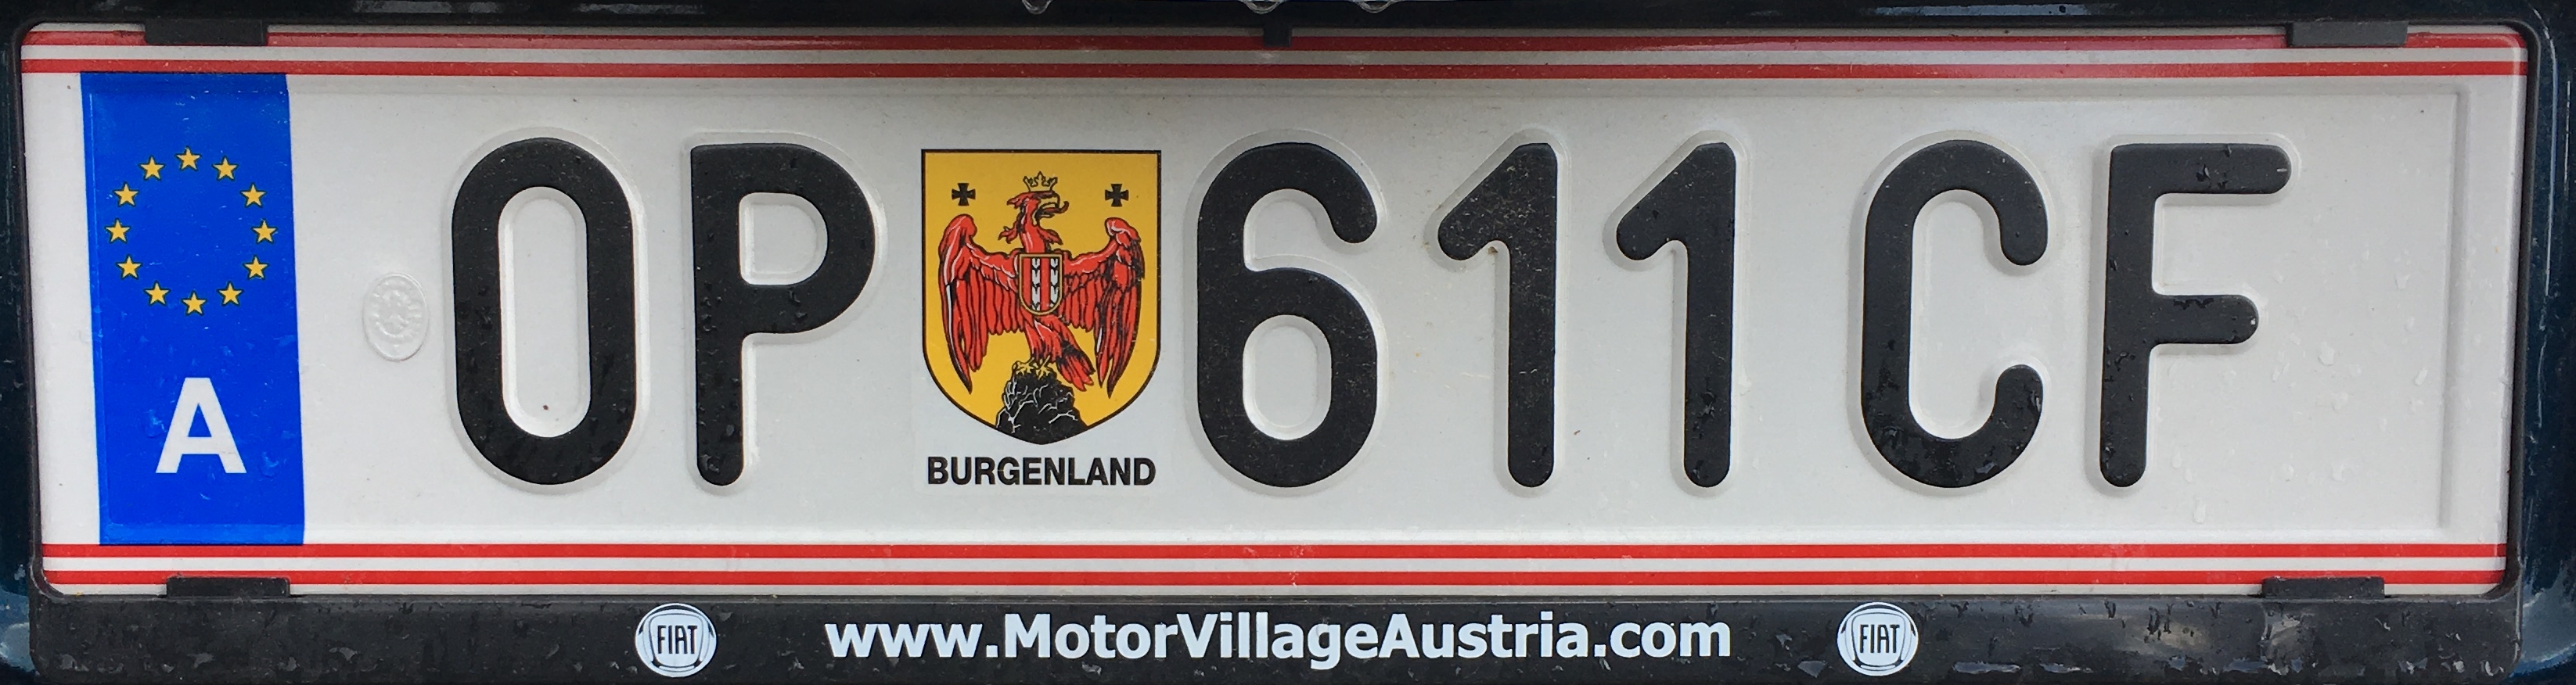 Registrační značka Rakousko - OP – Oberpullendorf, foto: www.podalnici.cz